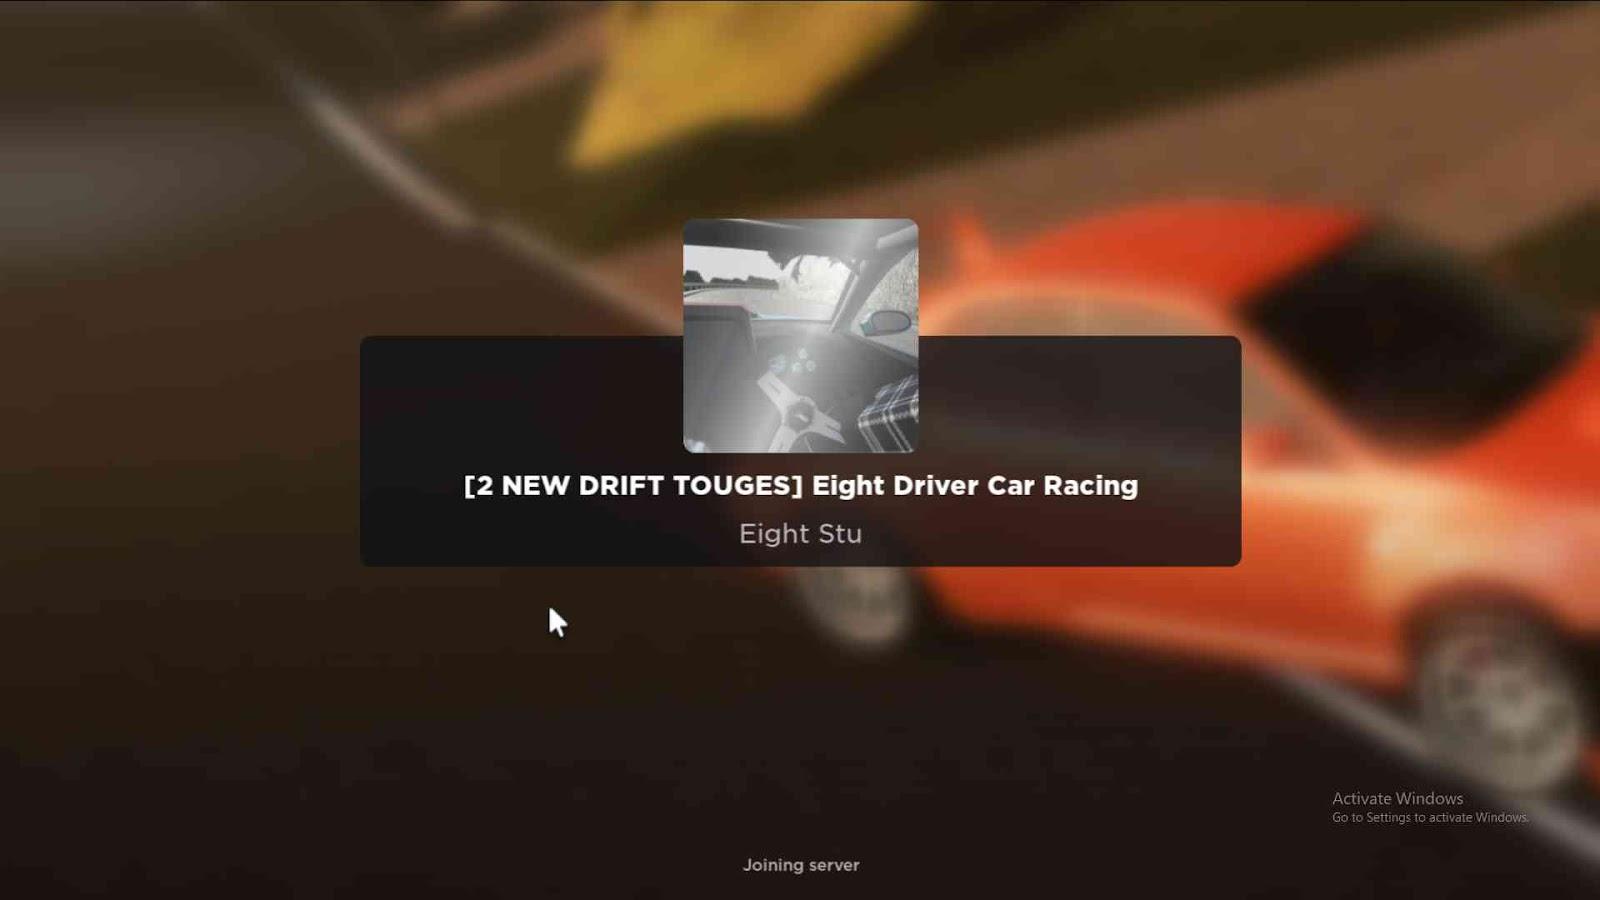 Eight Driver Car Racing